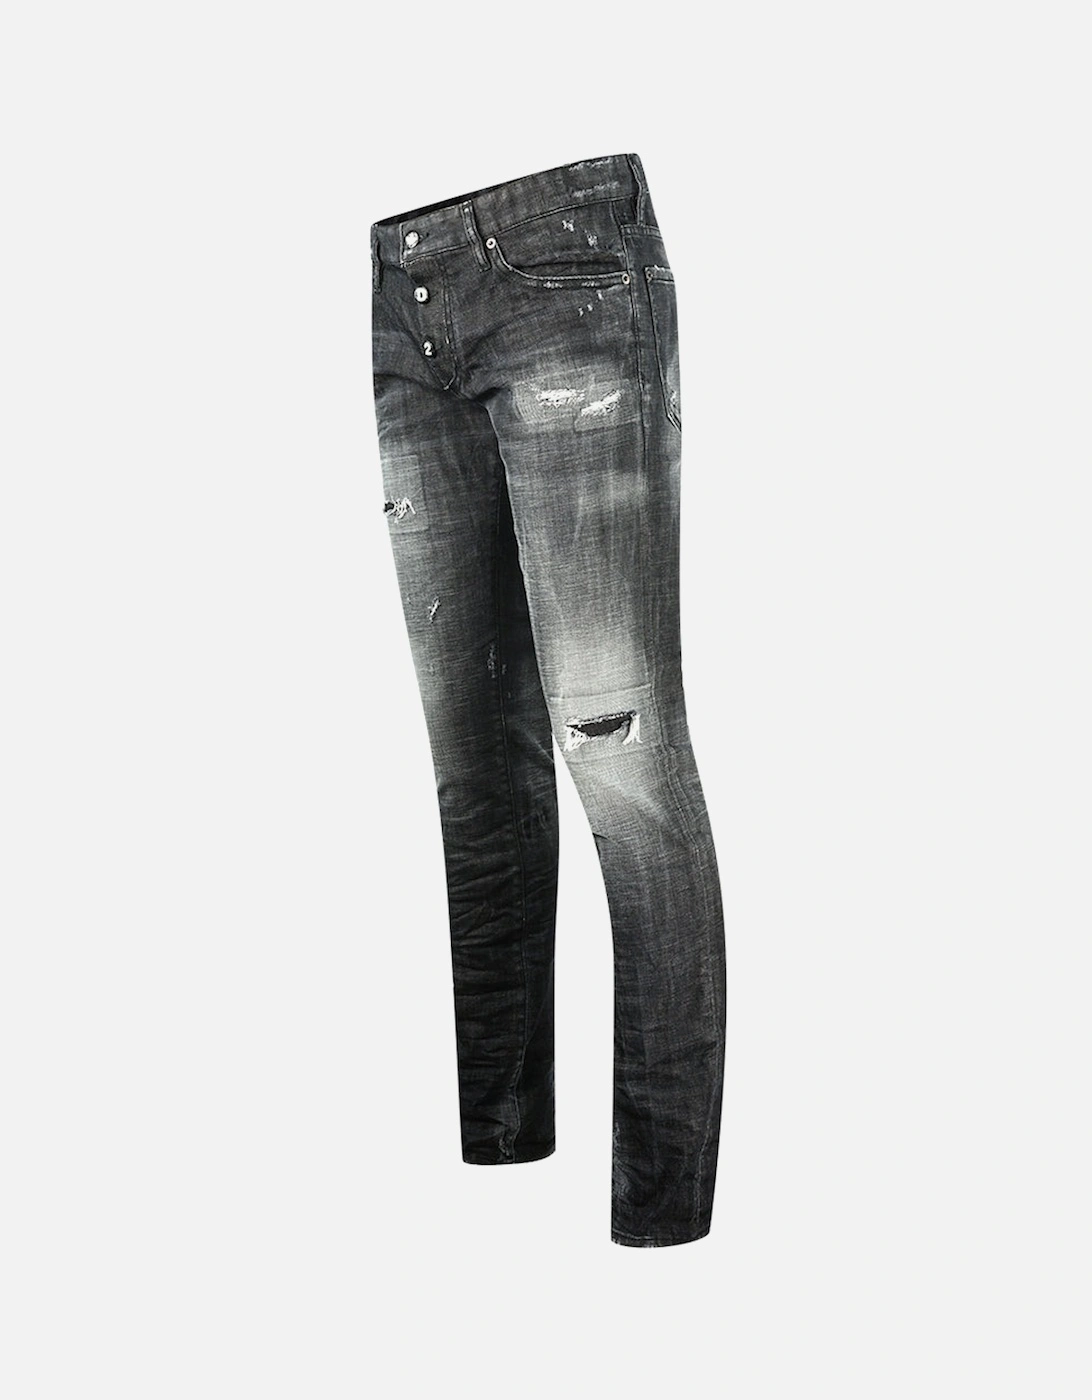 Slim Jean 1964 Destroyed Black Jeans